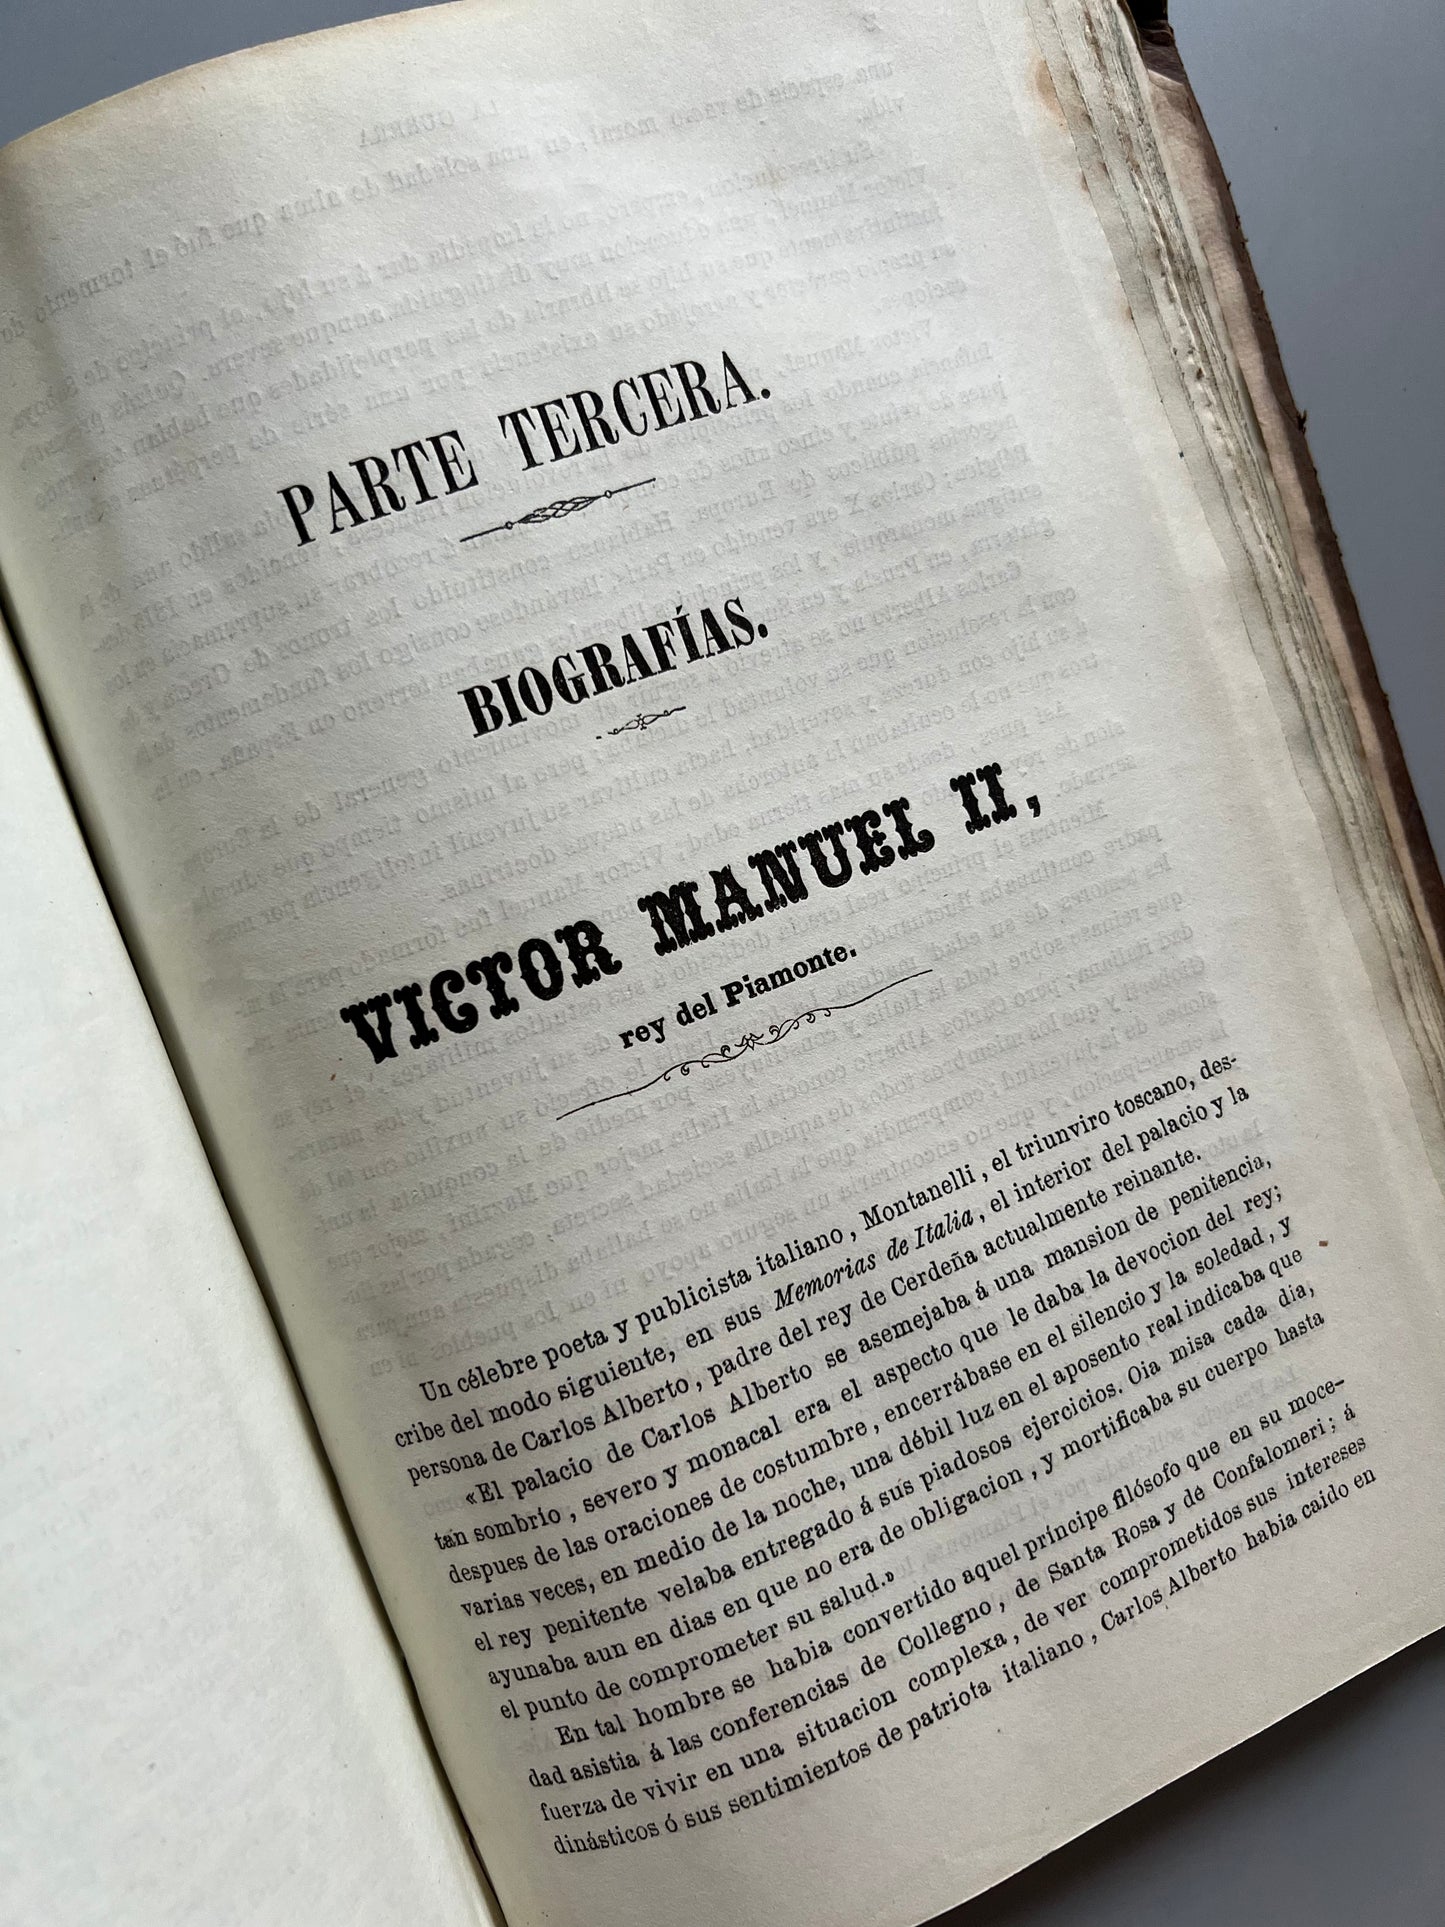 La guerra de Italia (1859), M. Leal y Madrigal (láminas desplegables) - Establecimiento tipográfico de Narciso Ramírez, 1859